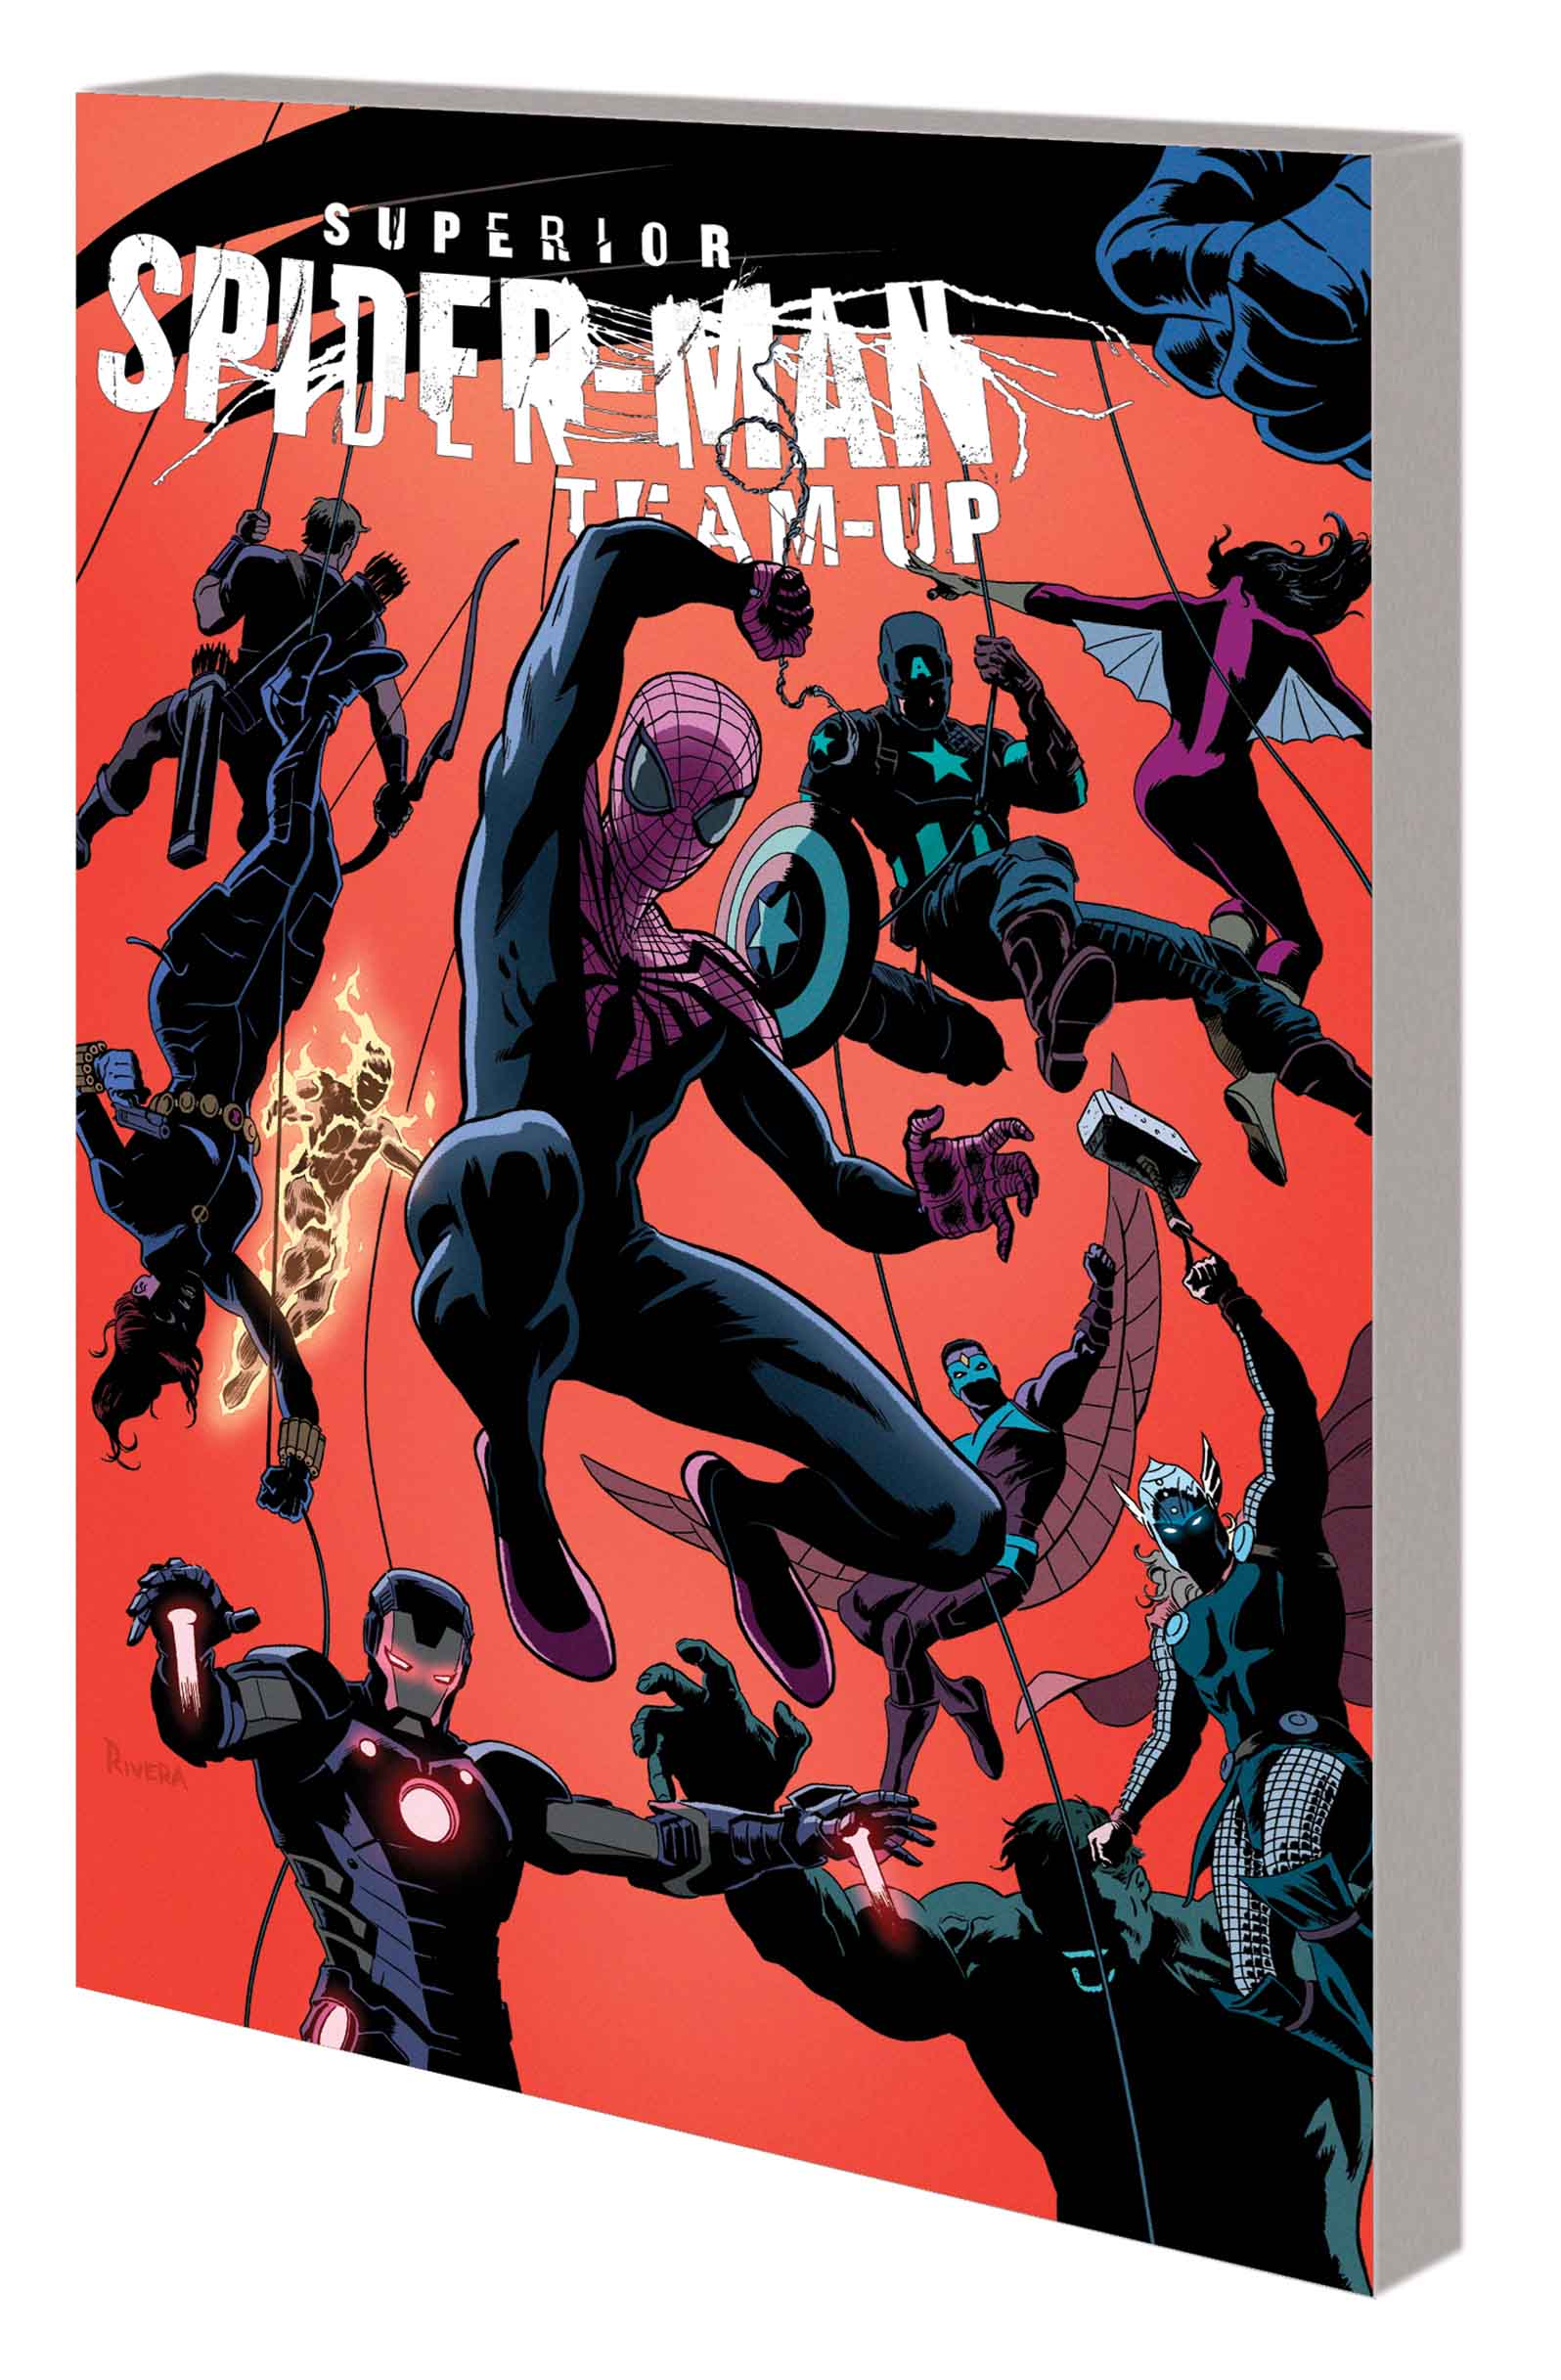 Superior Spider-Man Team-Up: Versus (Trade Paperback)